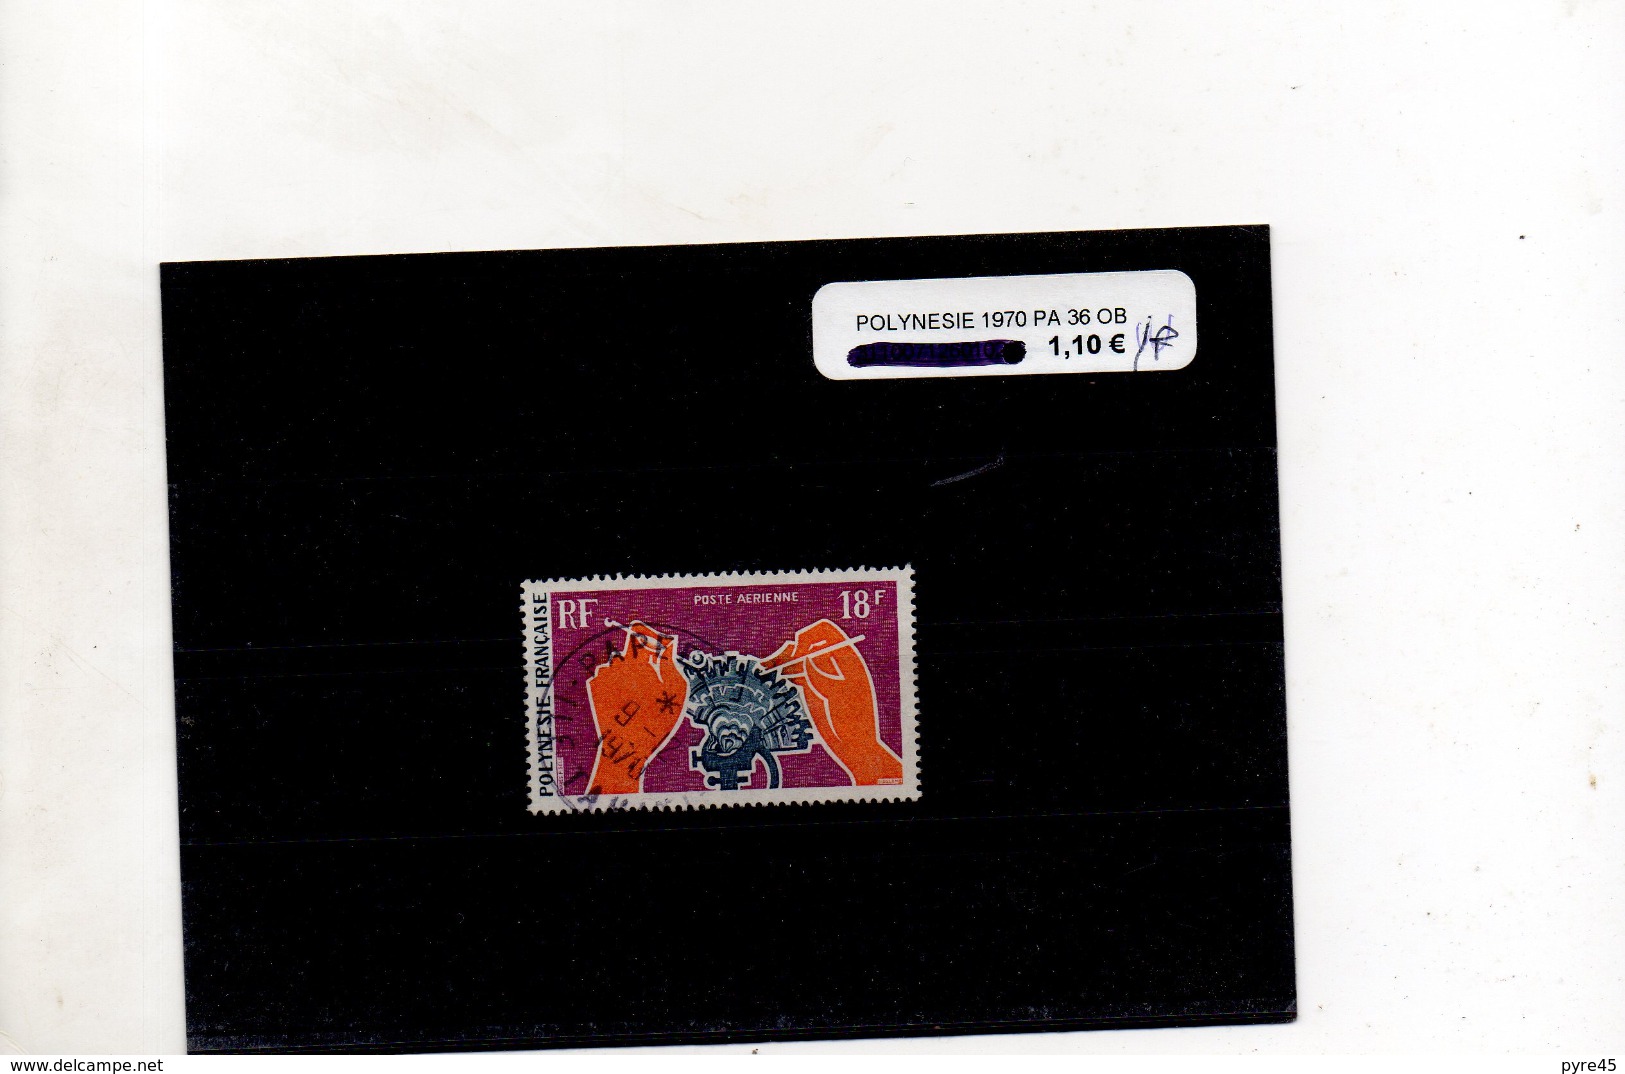 POLYNESIE POSTE AERIENNE 1970 N° 36 OBLITERE - Used Stamps